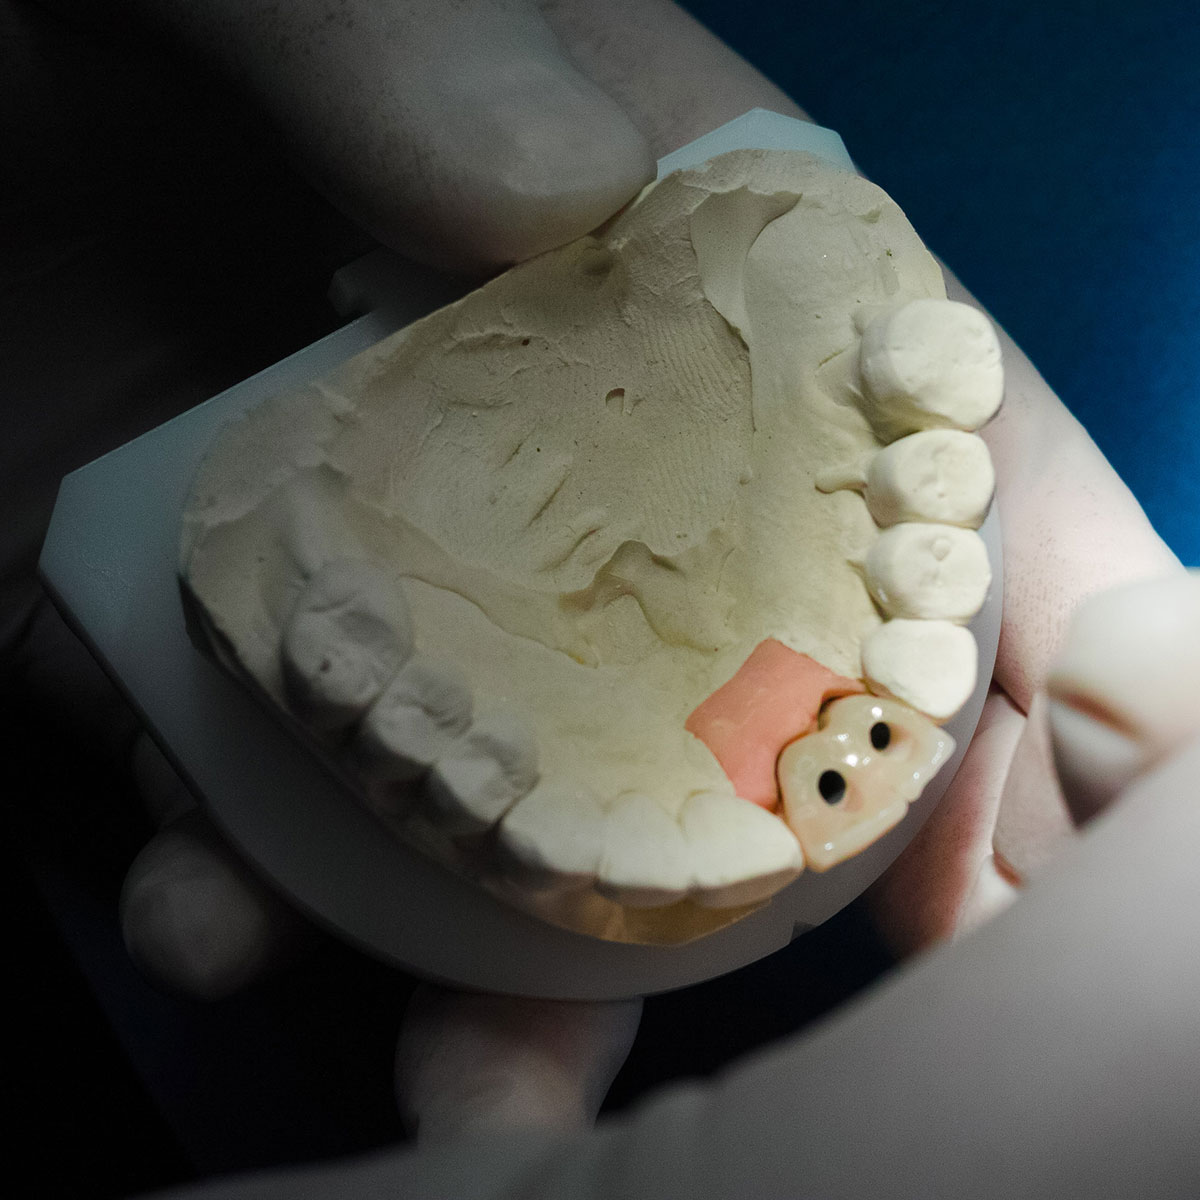 Miglior cemento definitivo per denti: i diversi tipi